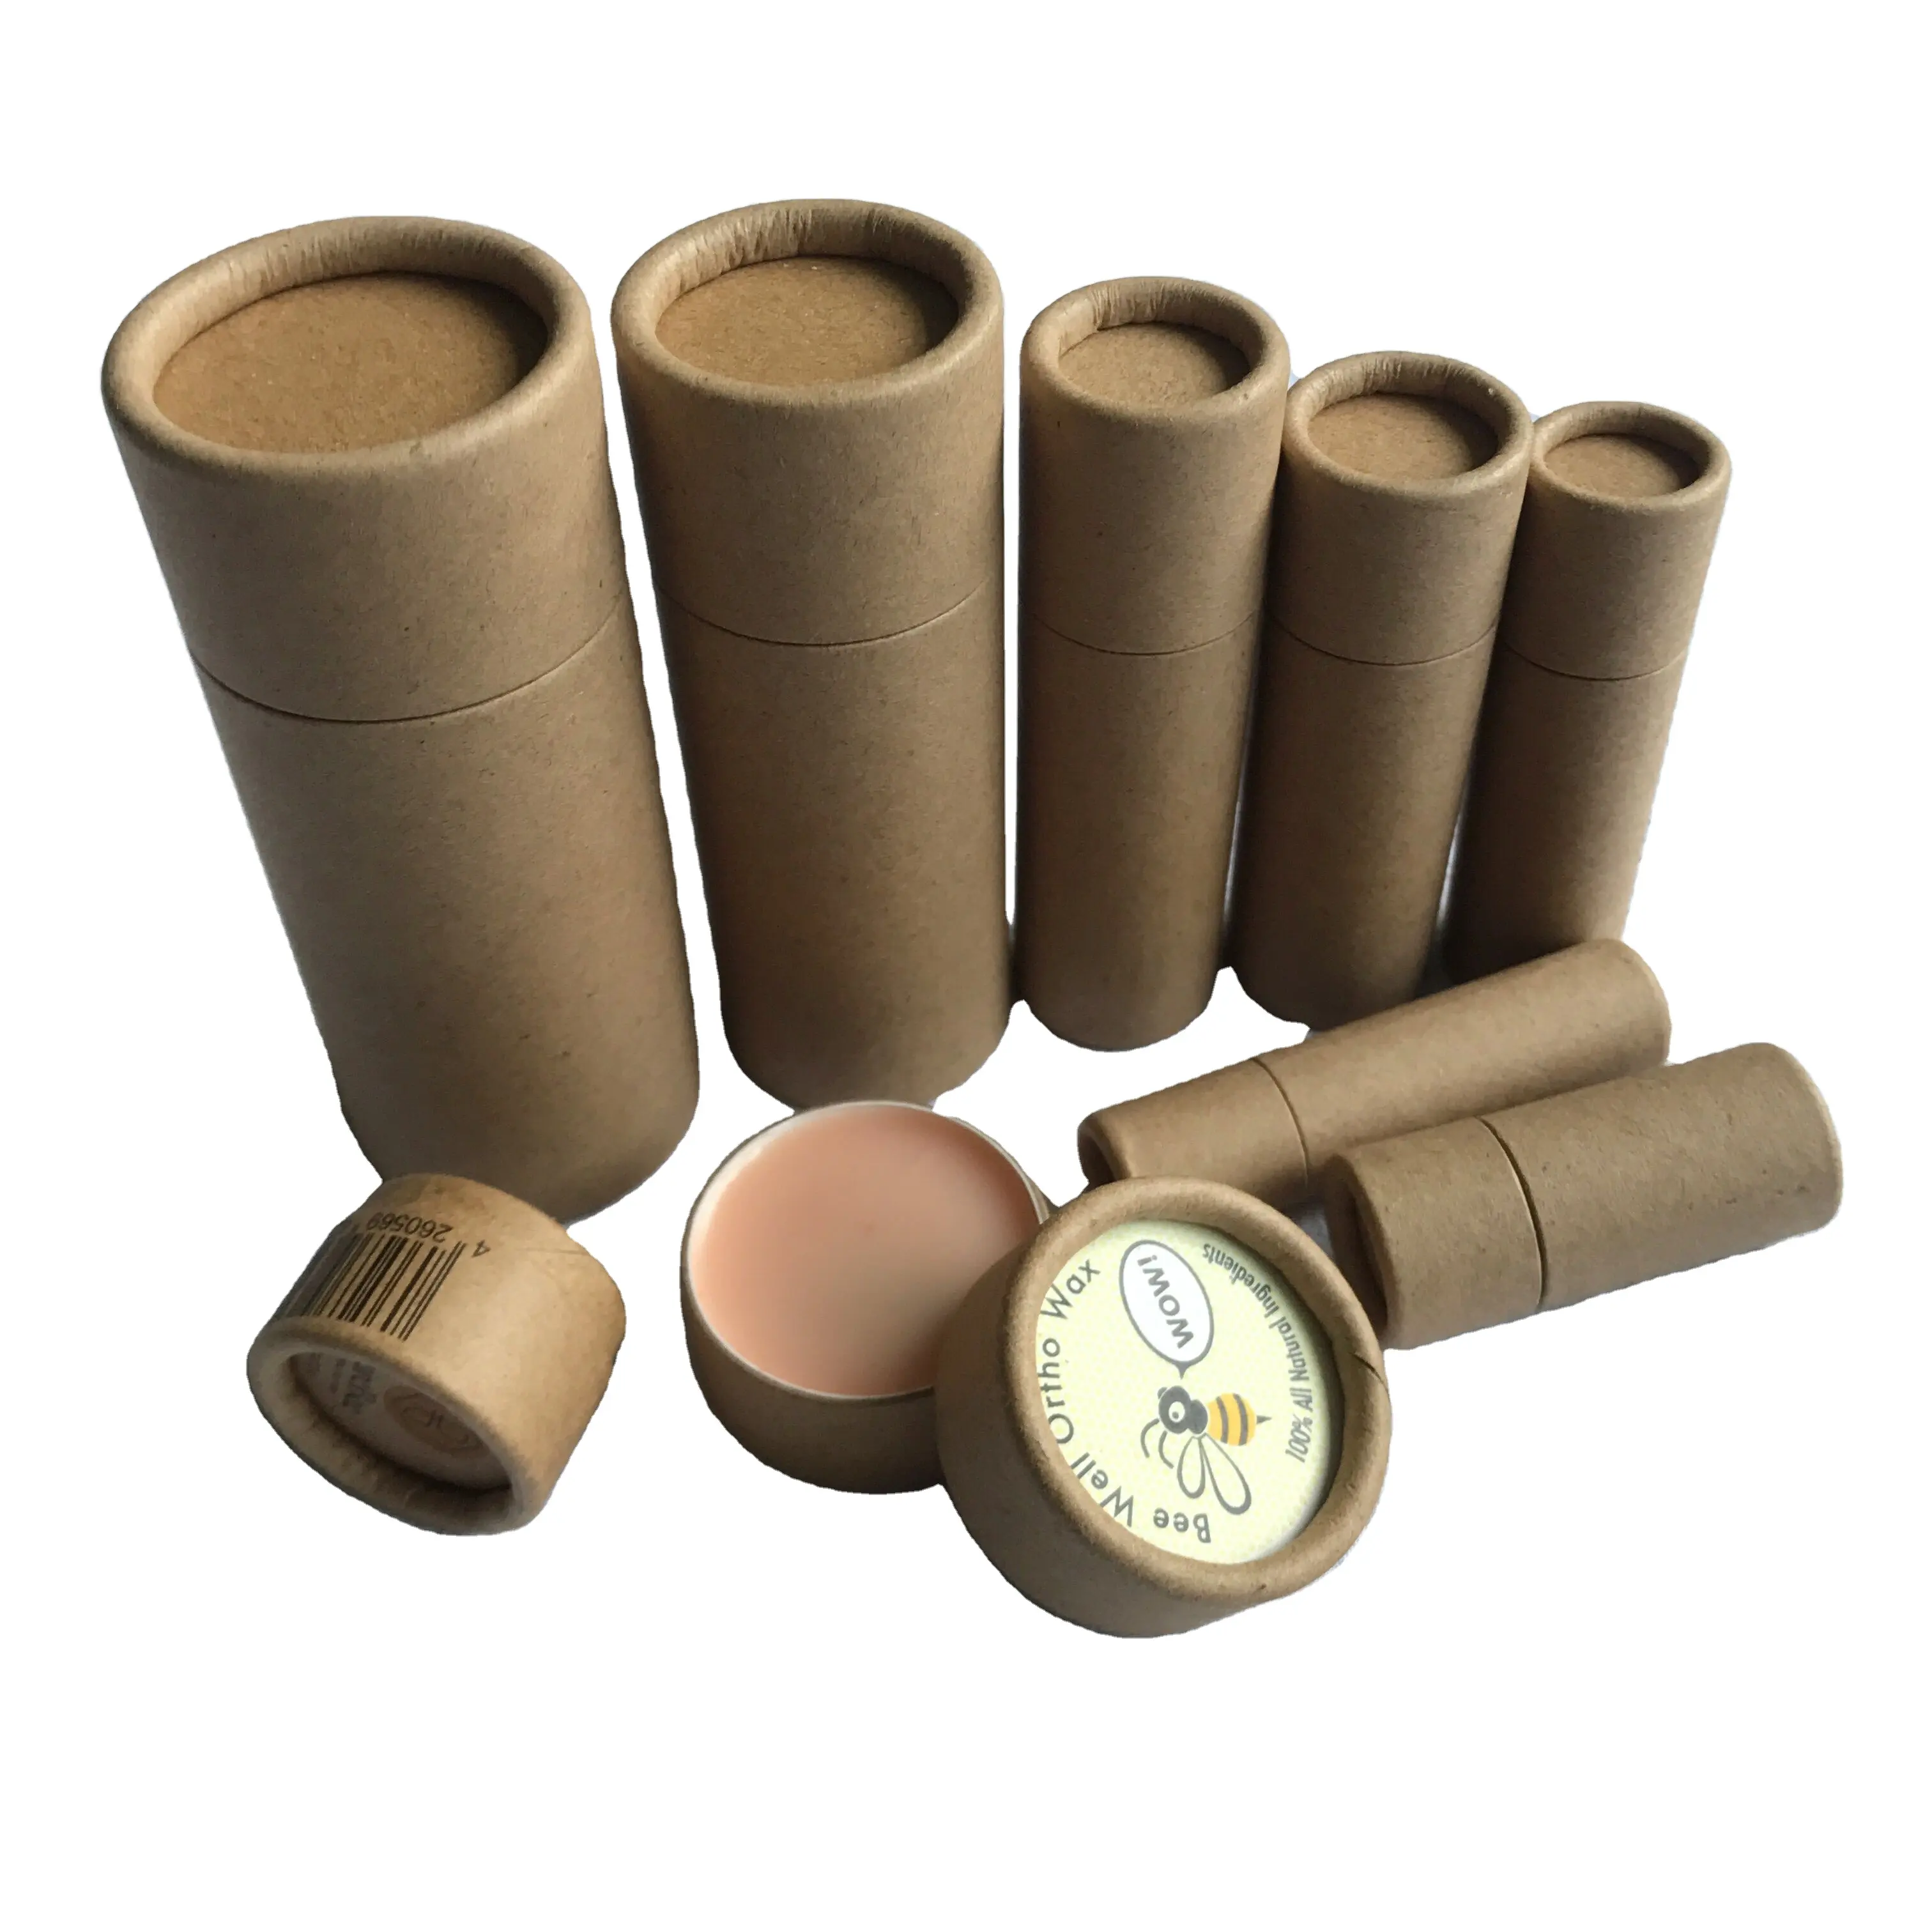 Design personalizado Empurre Embalagens Ecológicas Recicláveis Biodegradáveis Para Lip Balm Desodorante Produtos De Venda Quente Tubo De Papel